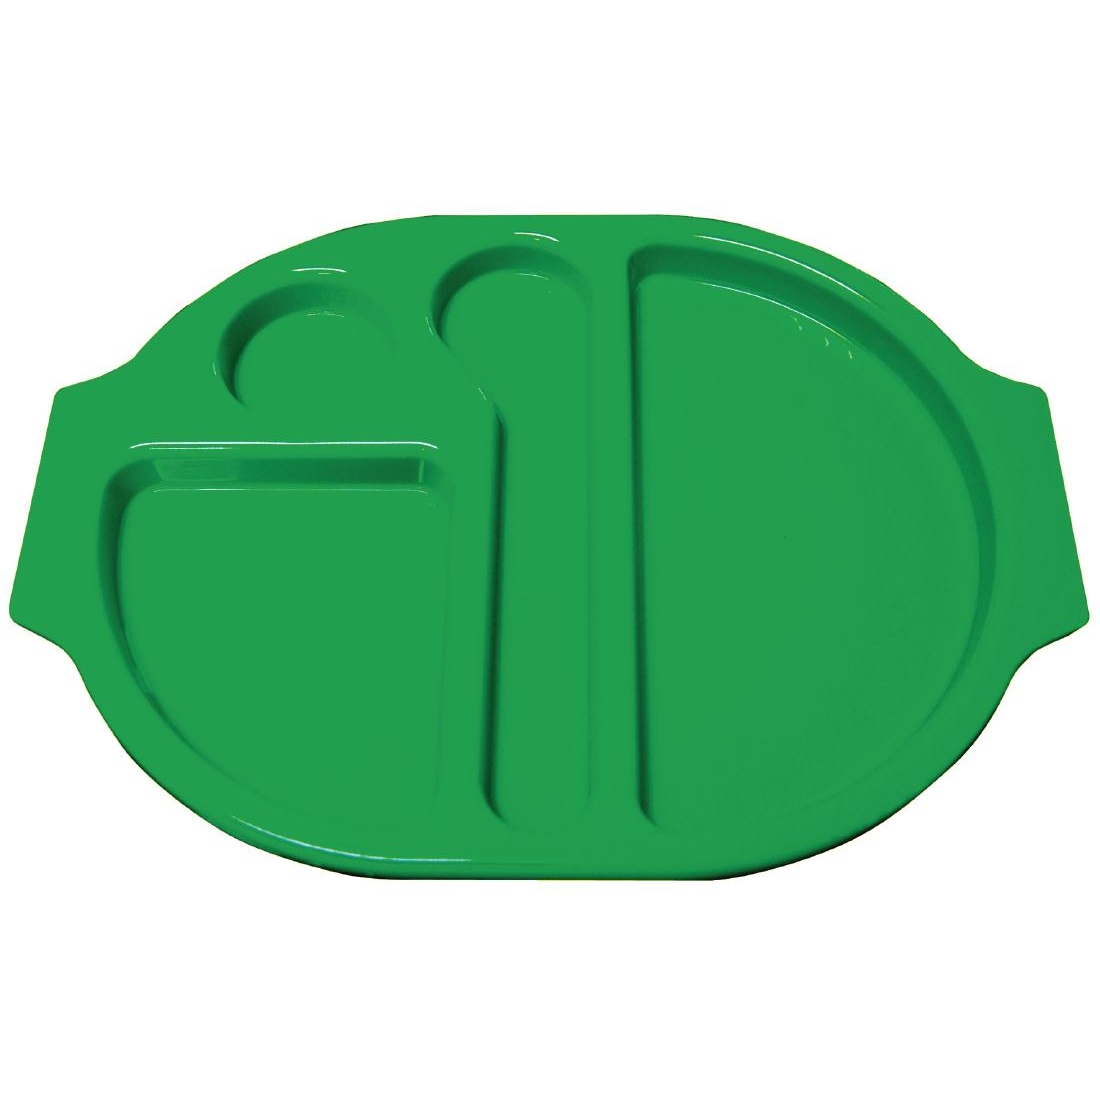 Kristallon Plastic Food Compartment Tray Small Green